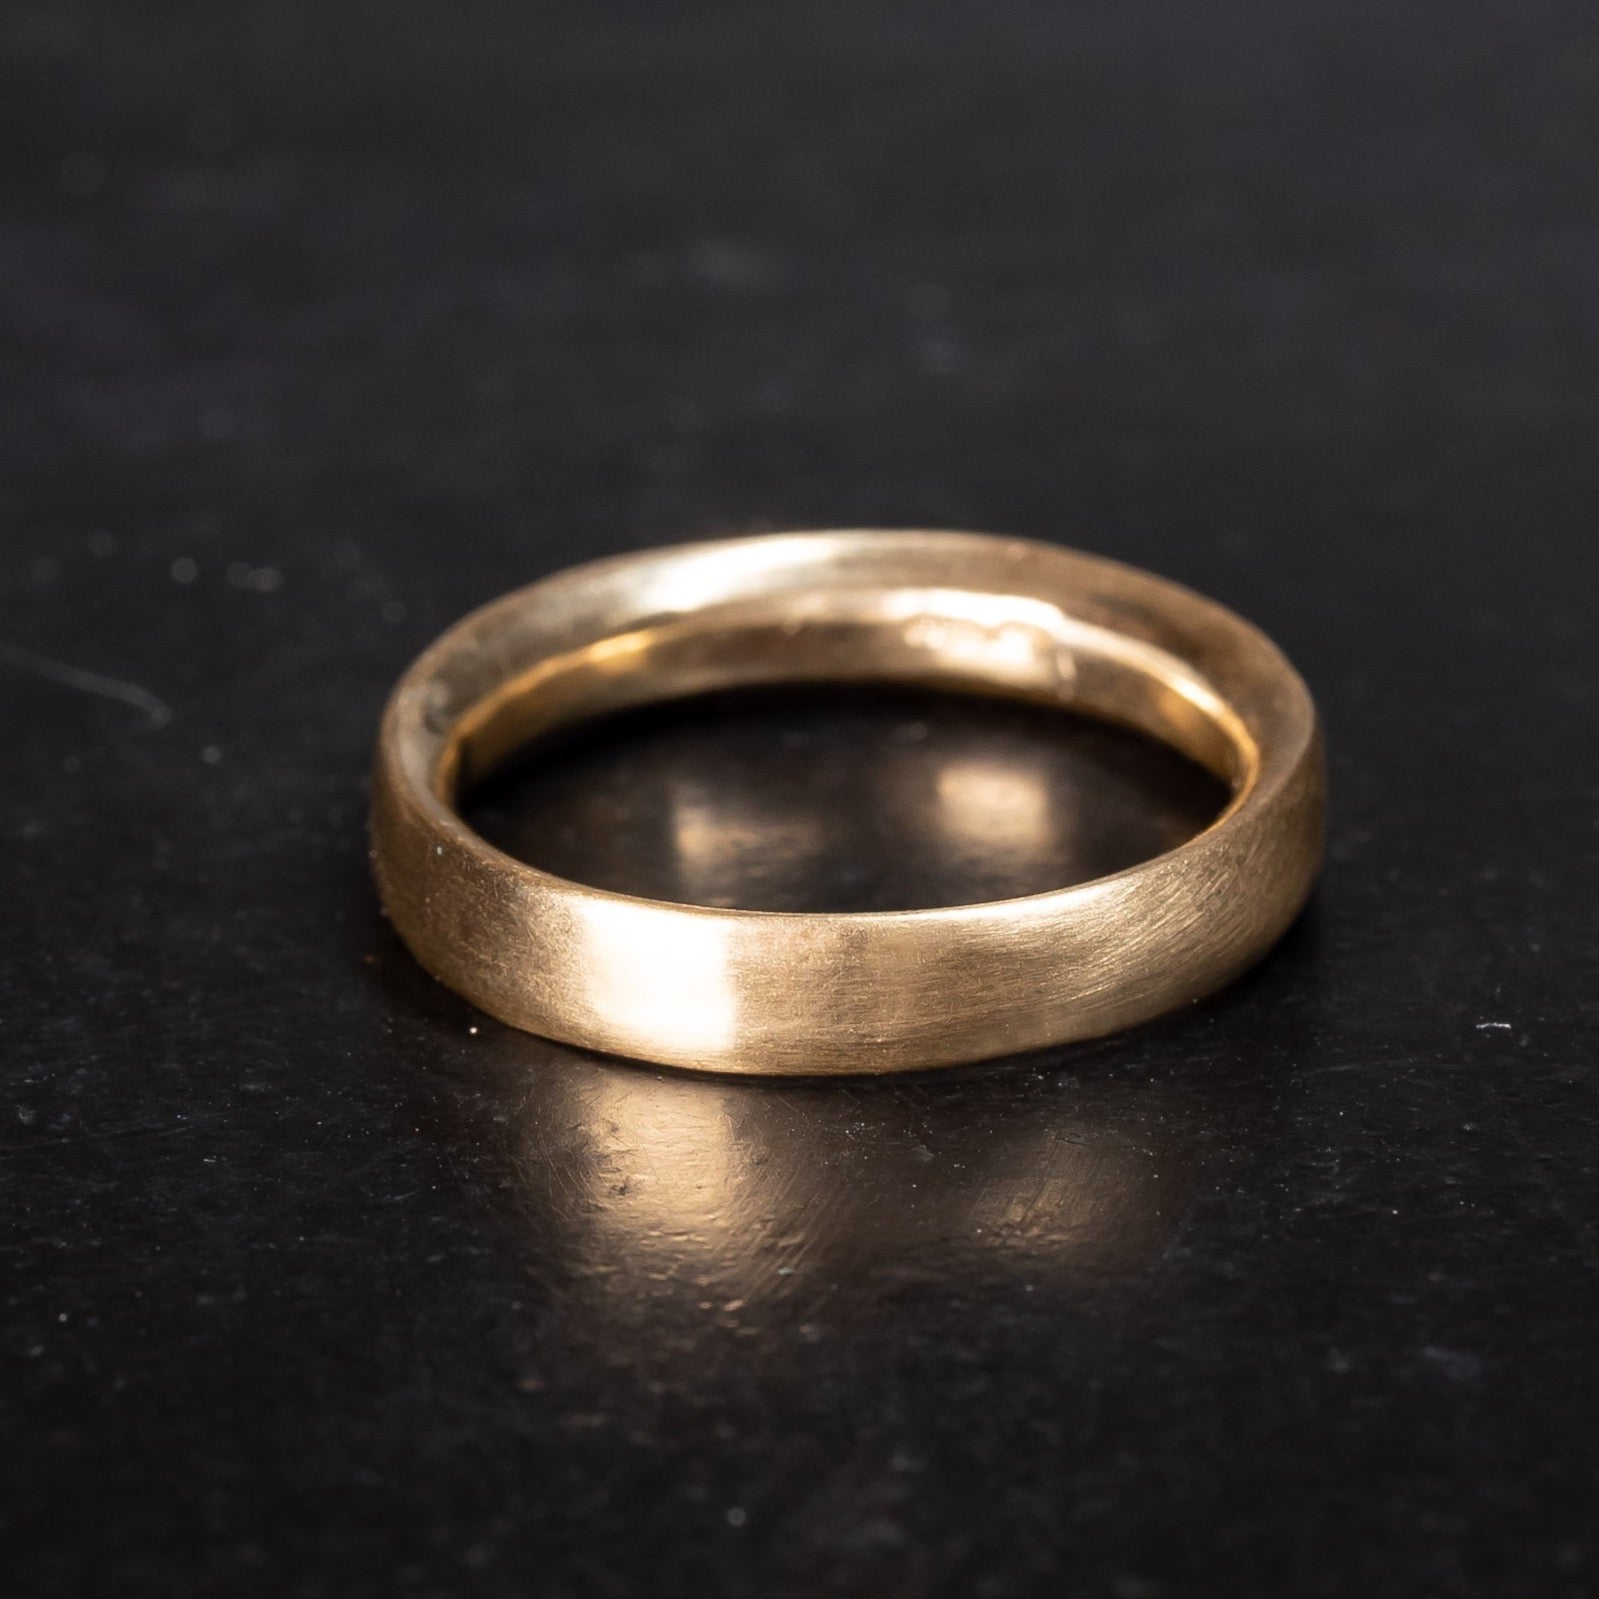 Minimalist smooth satin finish gold wedding ring